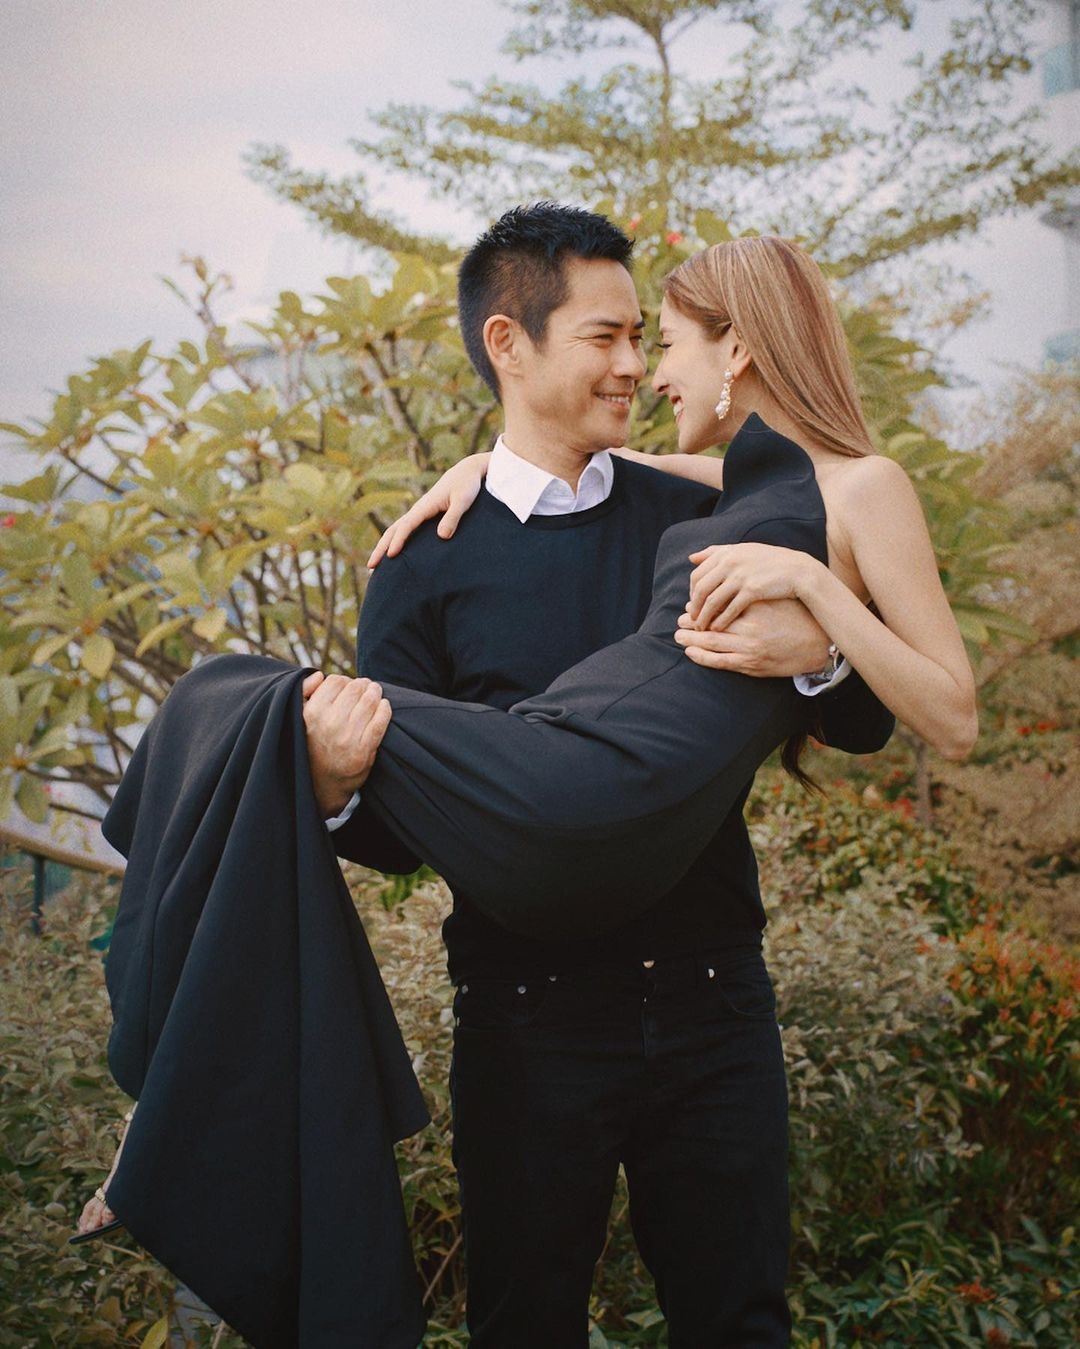 Hôn nhân hạnh phúc của tài tử Trịnh Gia Dĩnh và hoa hậu kém 22 tuổi - Ảnh 2.